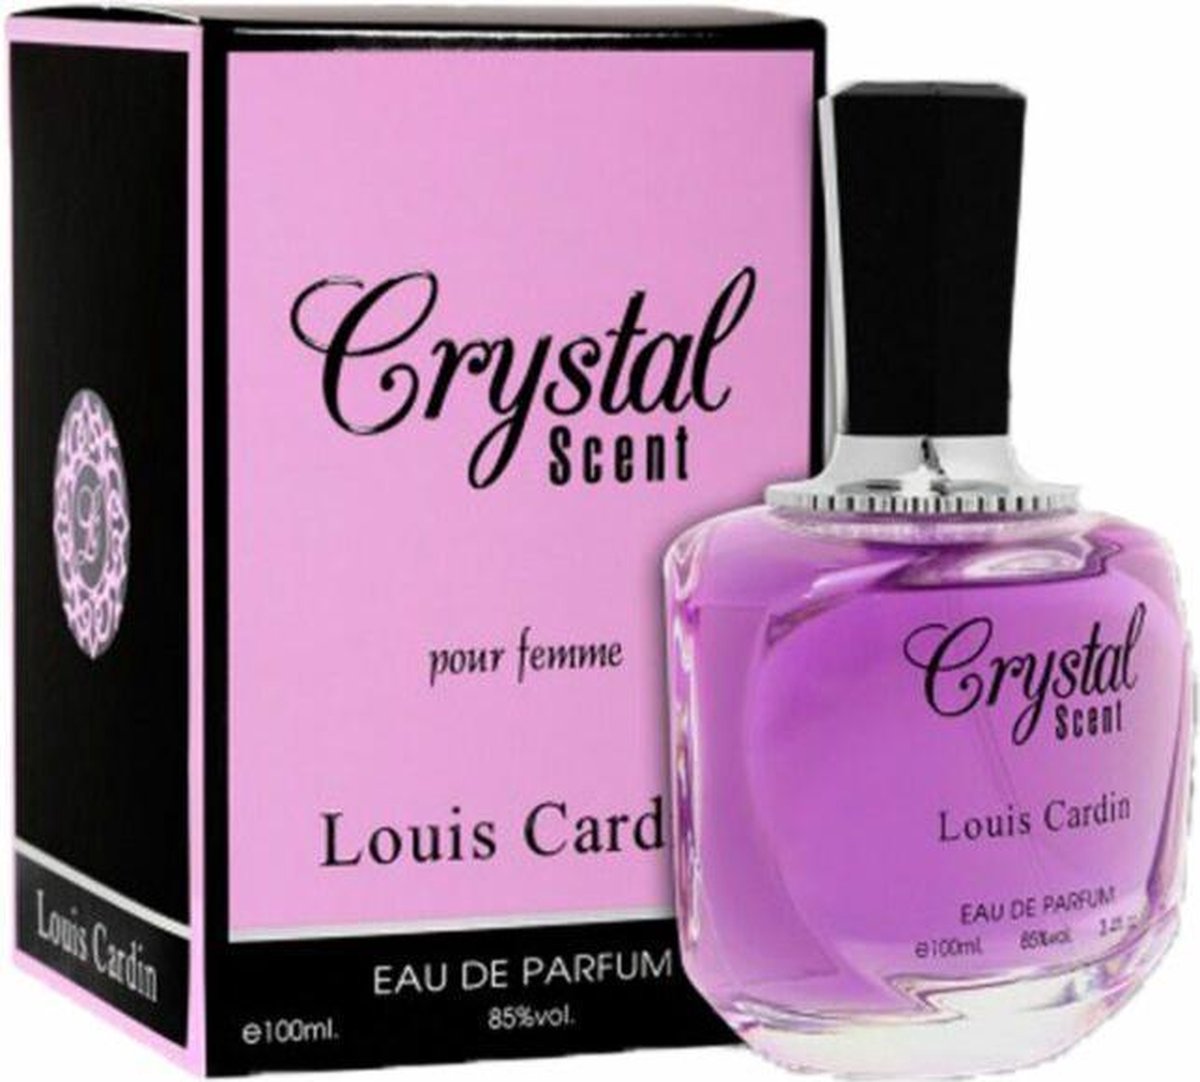 Louis Cardin Chrystal Scent EDP for Women 100 ml